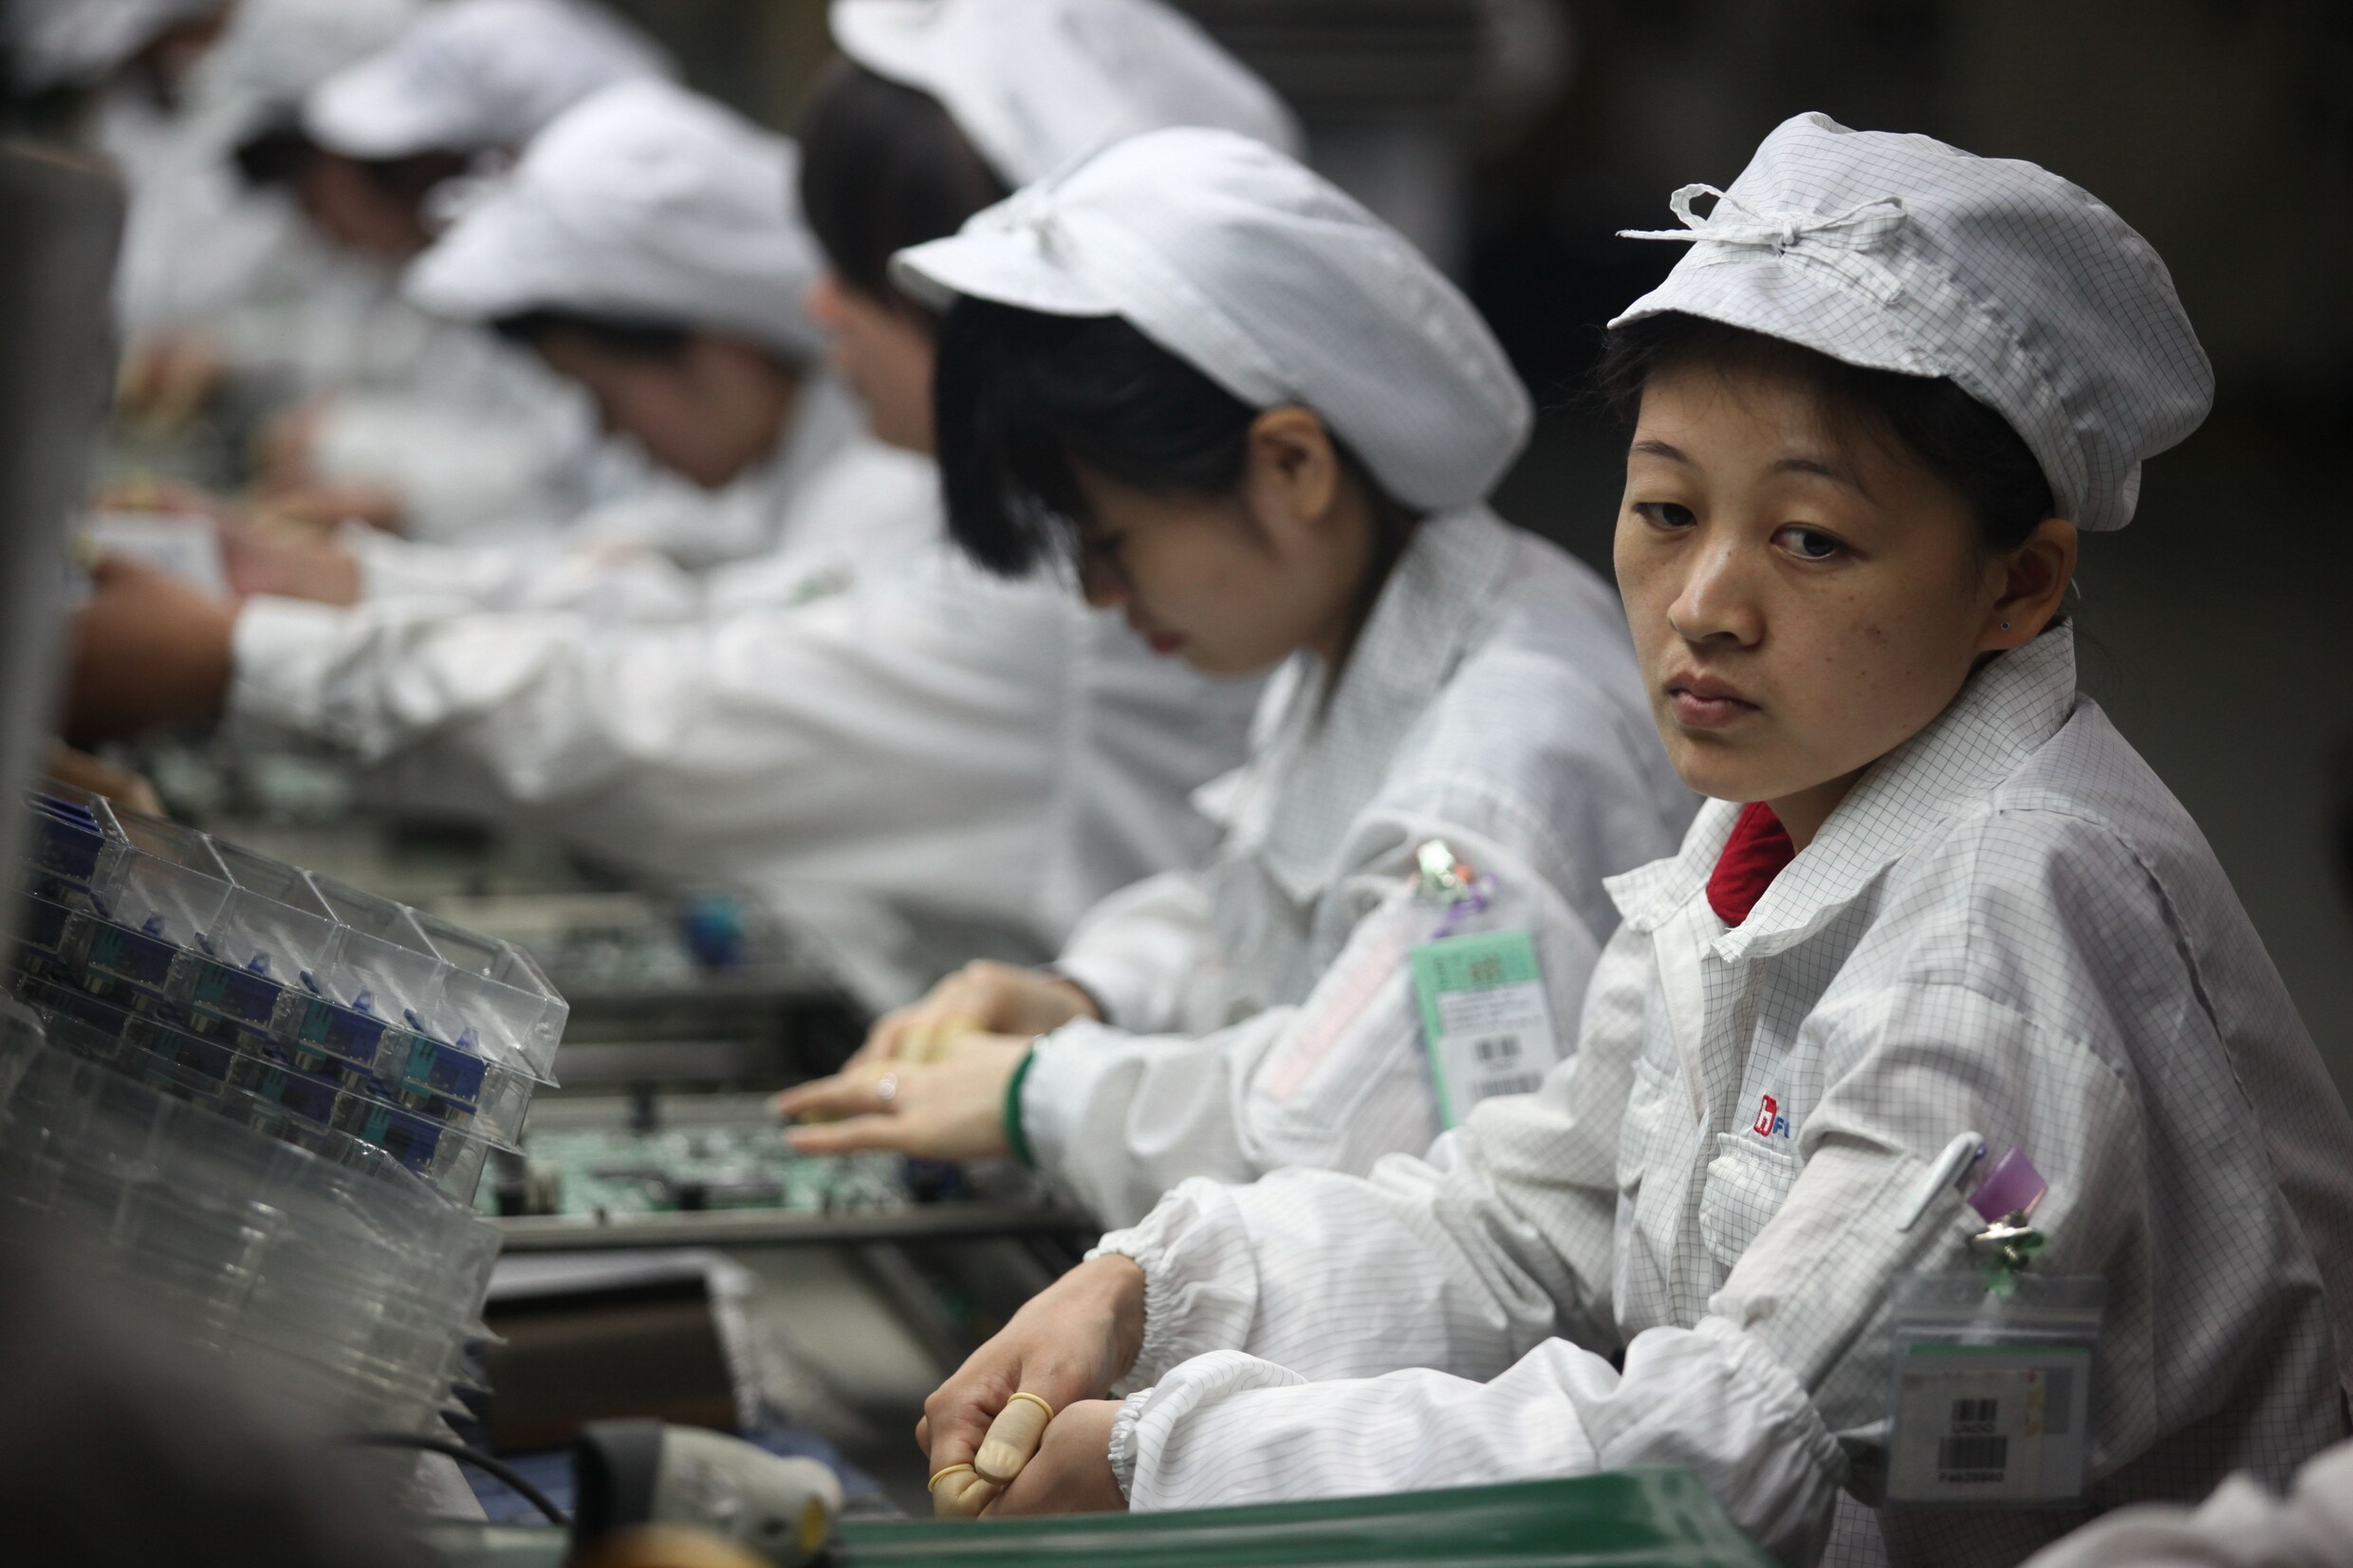 Producent grijpt in: Chinese studenten moeten niet langer 11 uur per dag werken om genoeg iPhones te maken